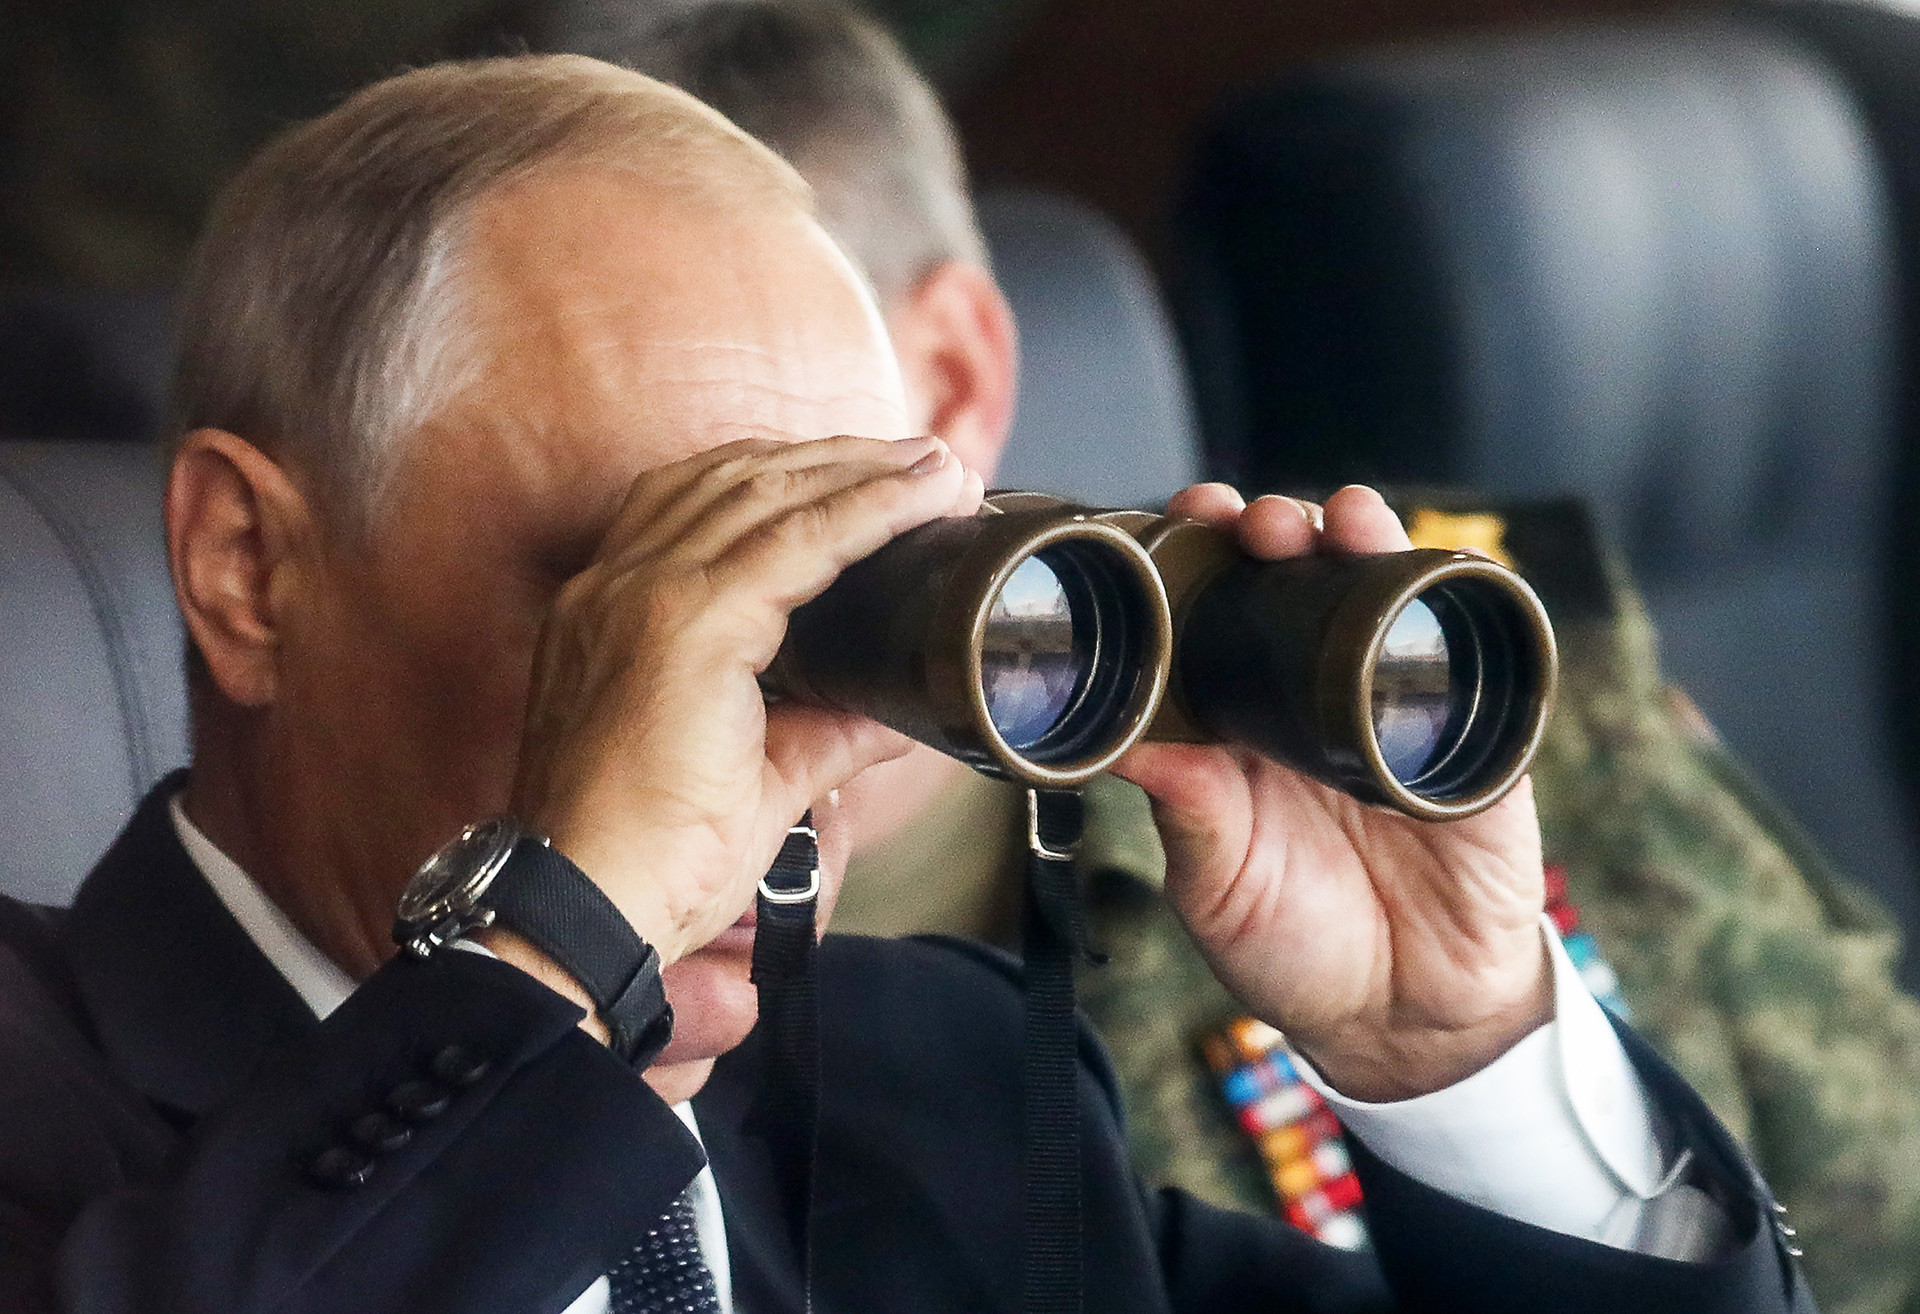 ツゴル演習場で行われた露中合同軍事演習「ボストーク2018」の重要な場面を見るため訪れたロシアのウラジーミル・プーチン大統領。